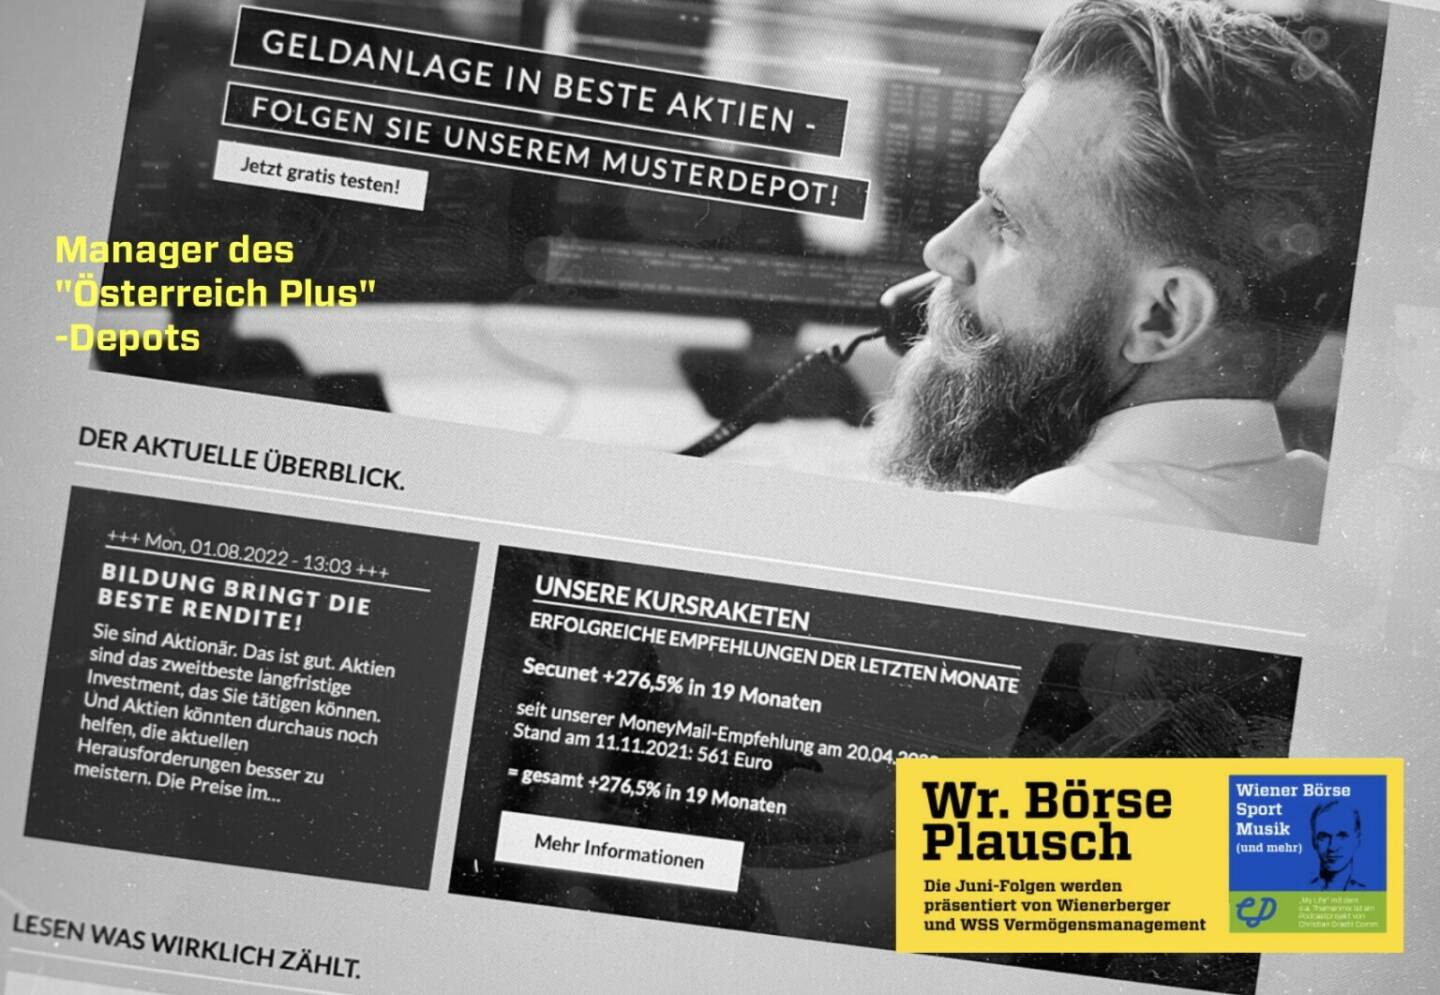 börsenwerte als Co-Presenter im August, also ab Folge S2/82 der Wiener Börse Pläusche im Rahmen von http://www.christian-drastil.com/podcast .